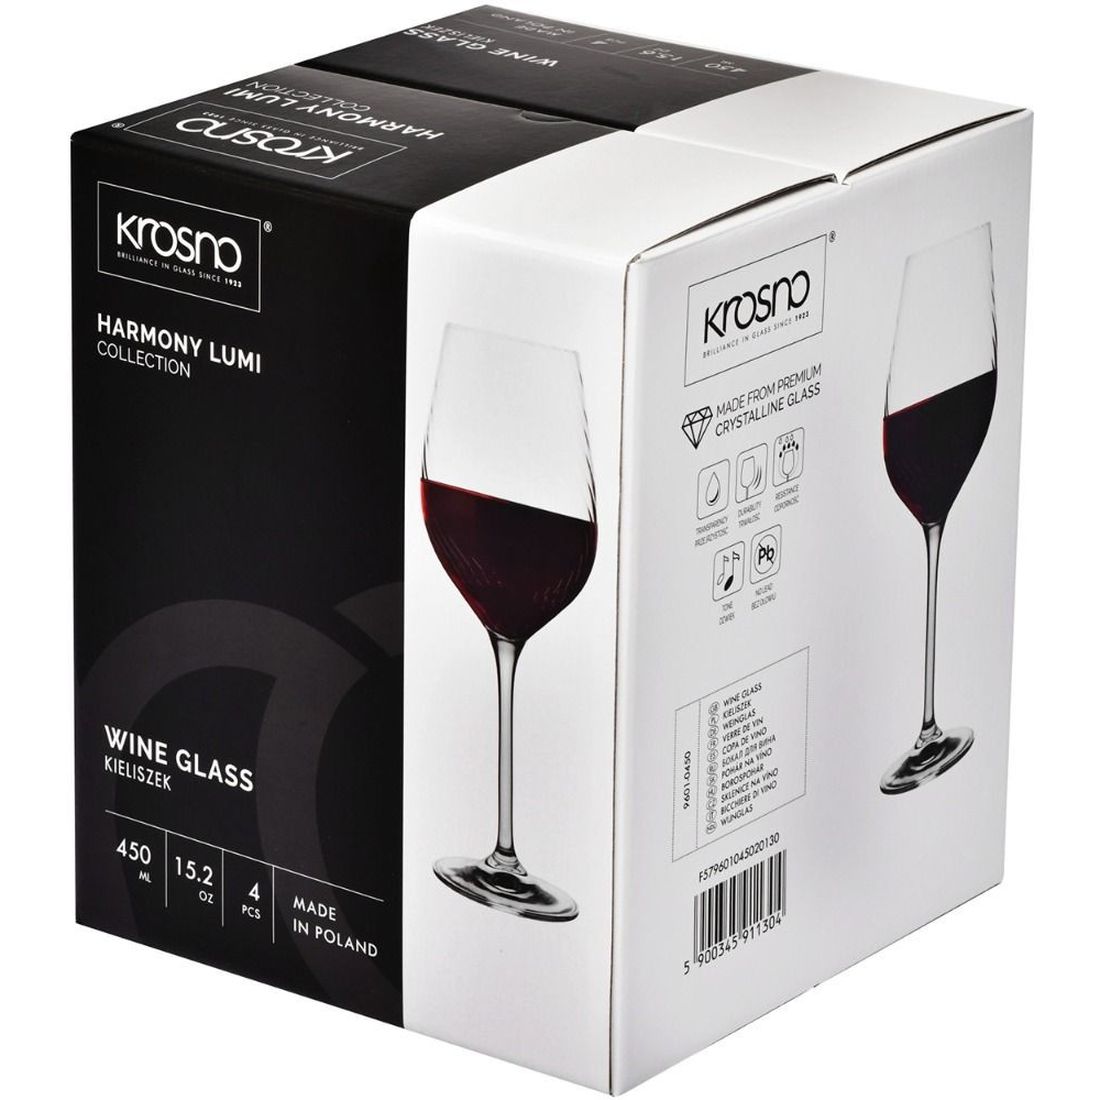 Набор бокалов Krosno Harmony Lumi для вина 450 мл 4 шт. (911304) - фото 3